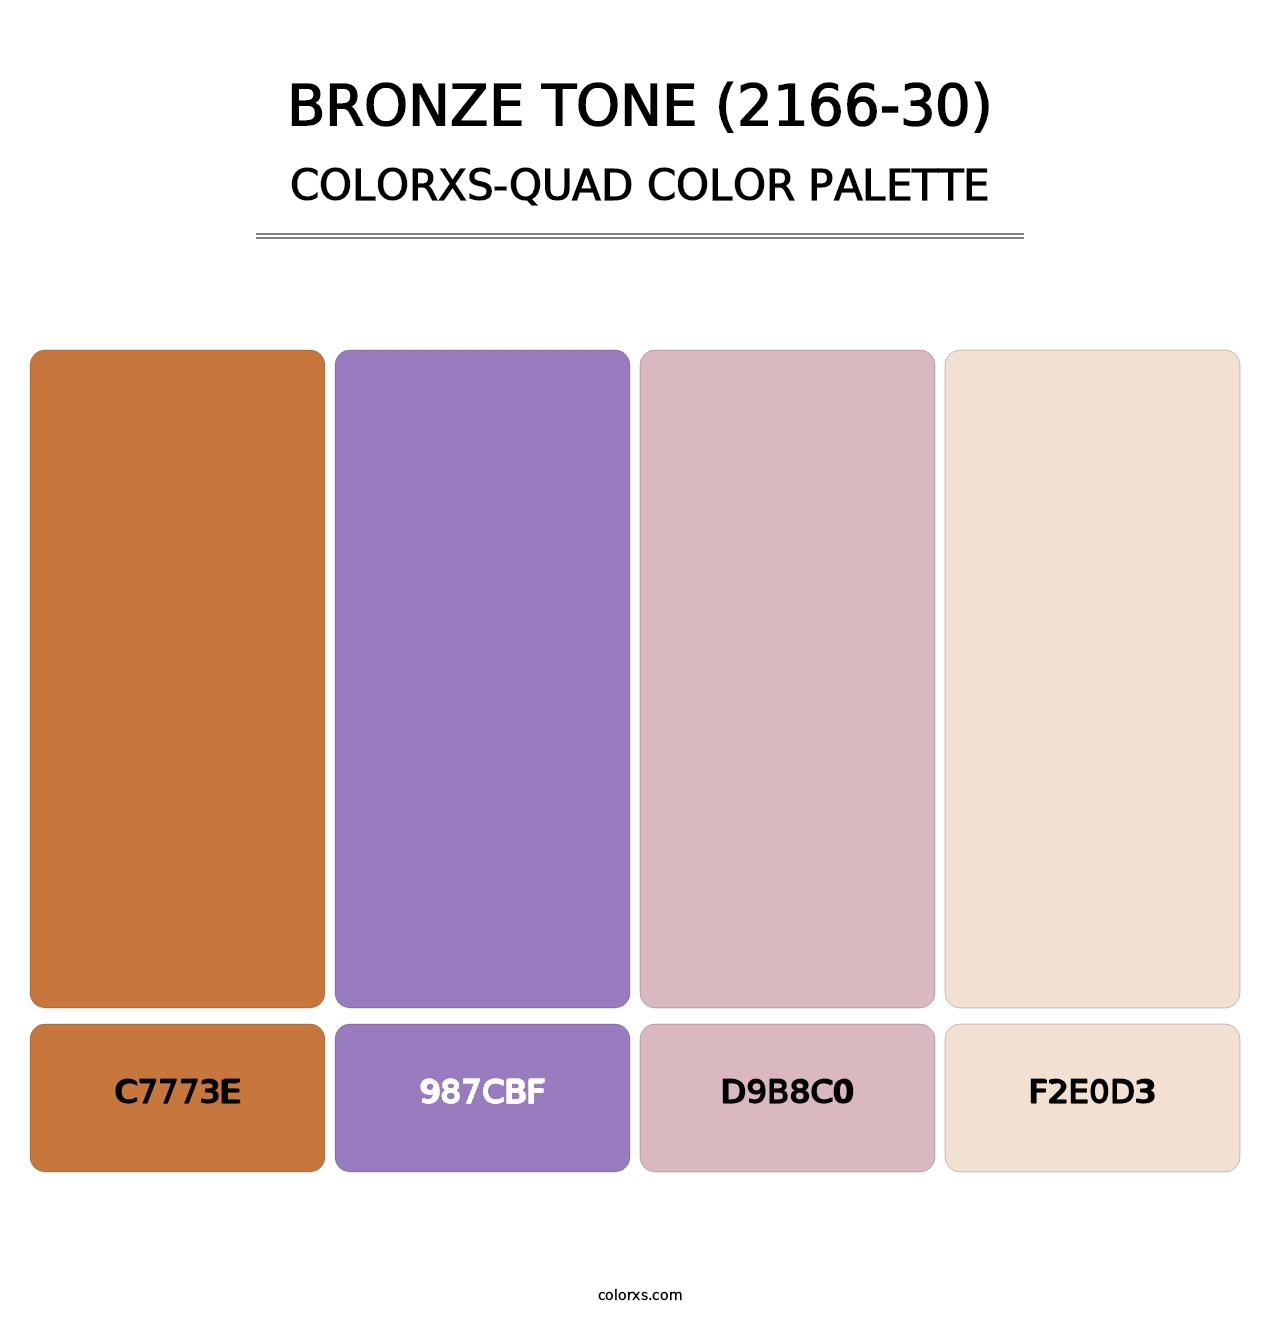 Bronze Tone (2166-30) - Colorxs Quad Palette